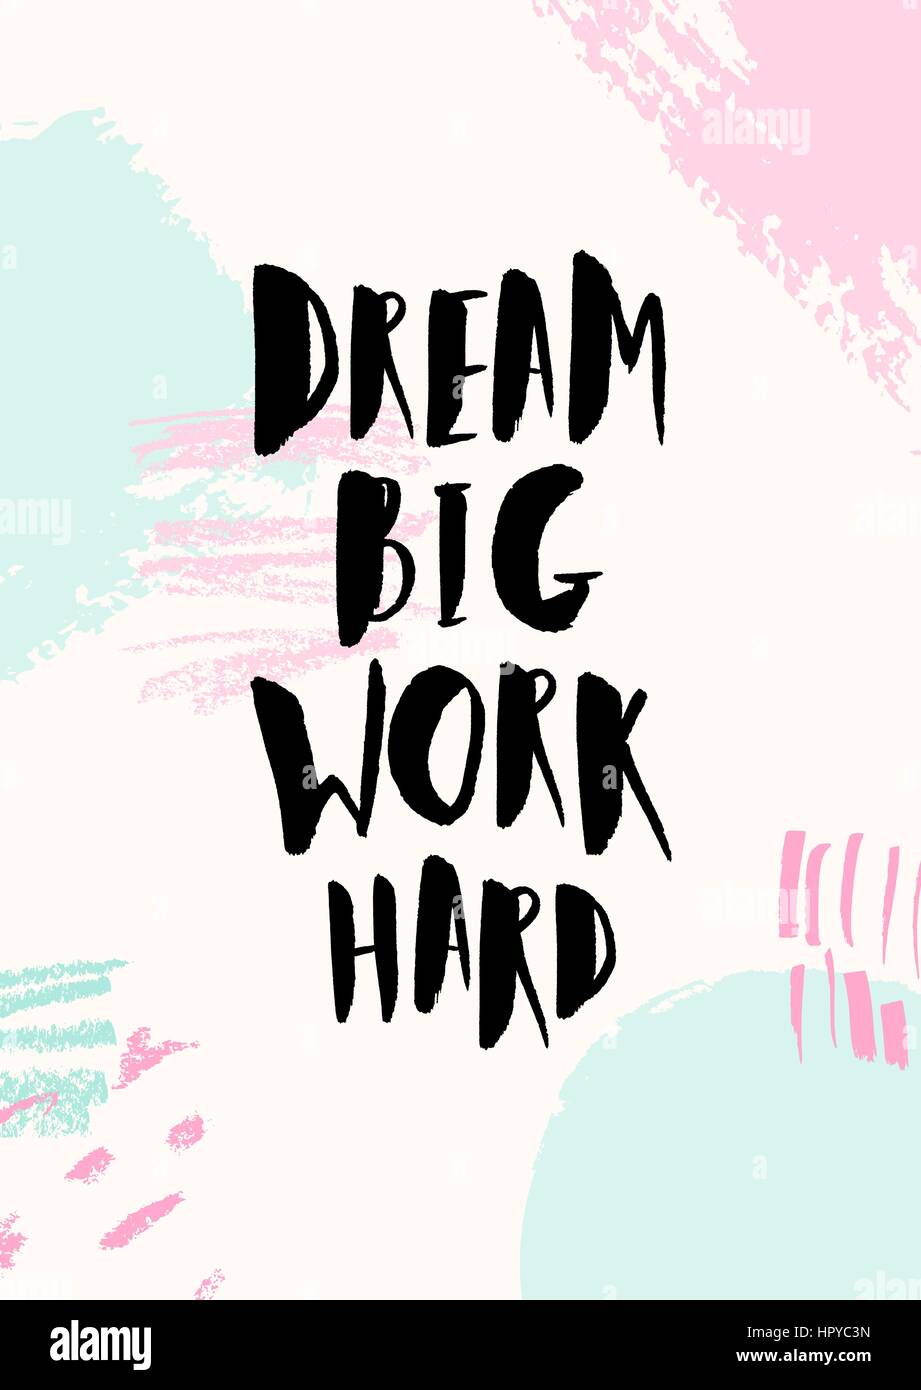 Träumen Sie große Arbeit Hard - inspirierend Zitat Plakatgestaltung. Hand beschriftet Text schwarz auf abstrakte Pinsel Striche Hintergrund in Pastellfarben. Stock Vektor